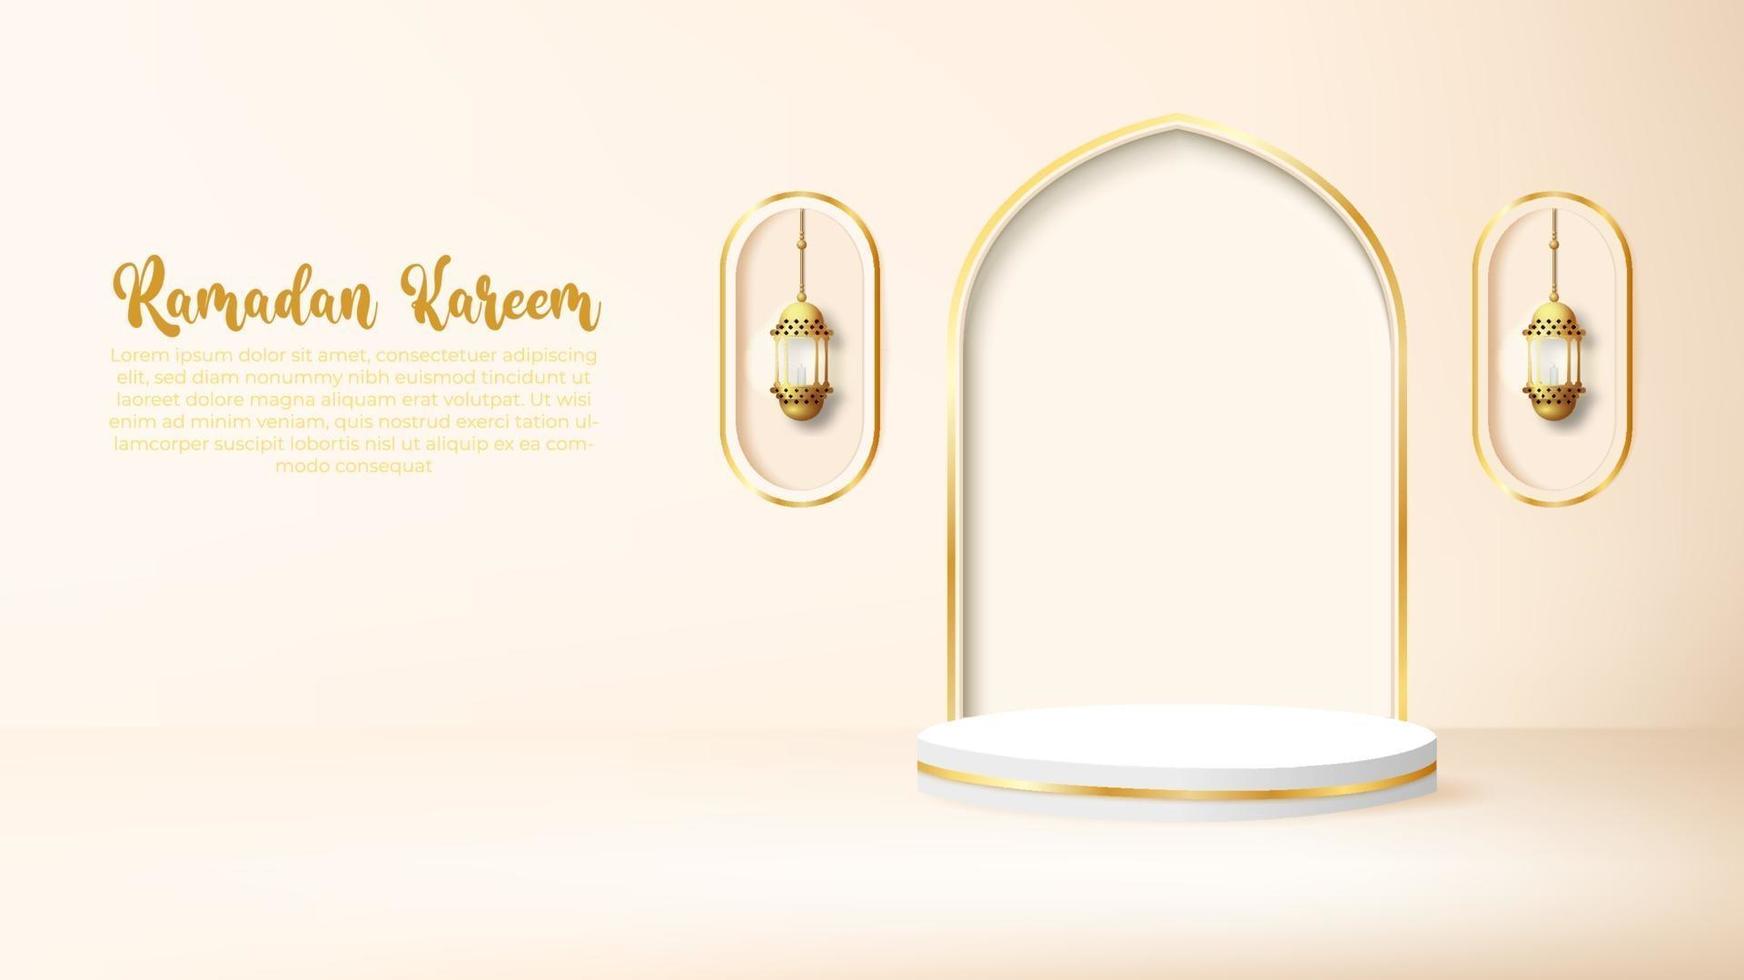 3d ramadan kareem background with golden lamp and podium. vector